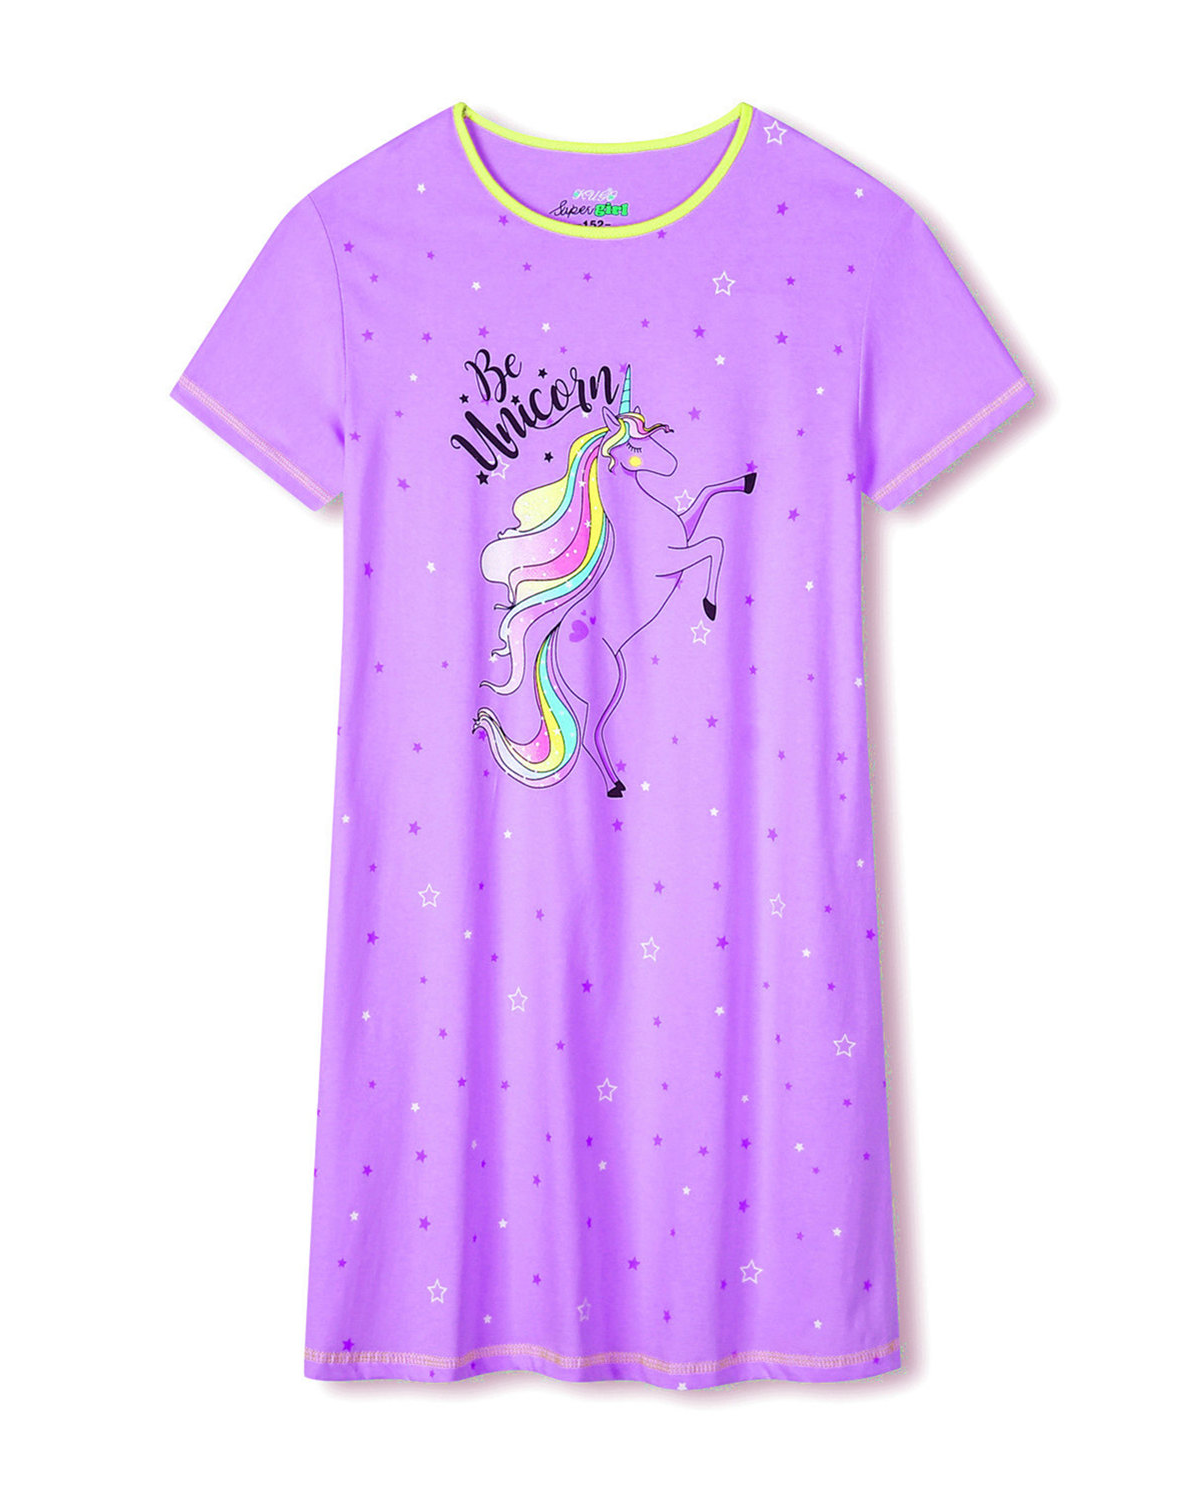 Dívčí noční košile - KUGO MN1769, fialková Barva: Fialková, Velikost: 146